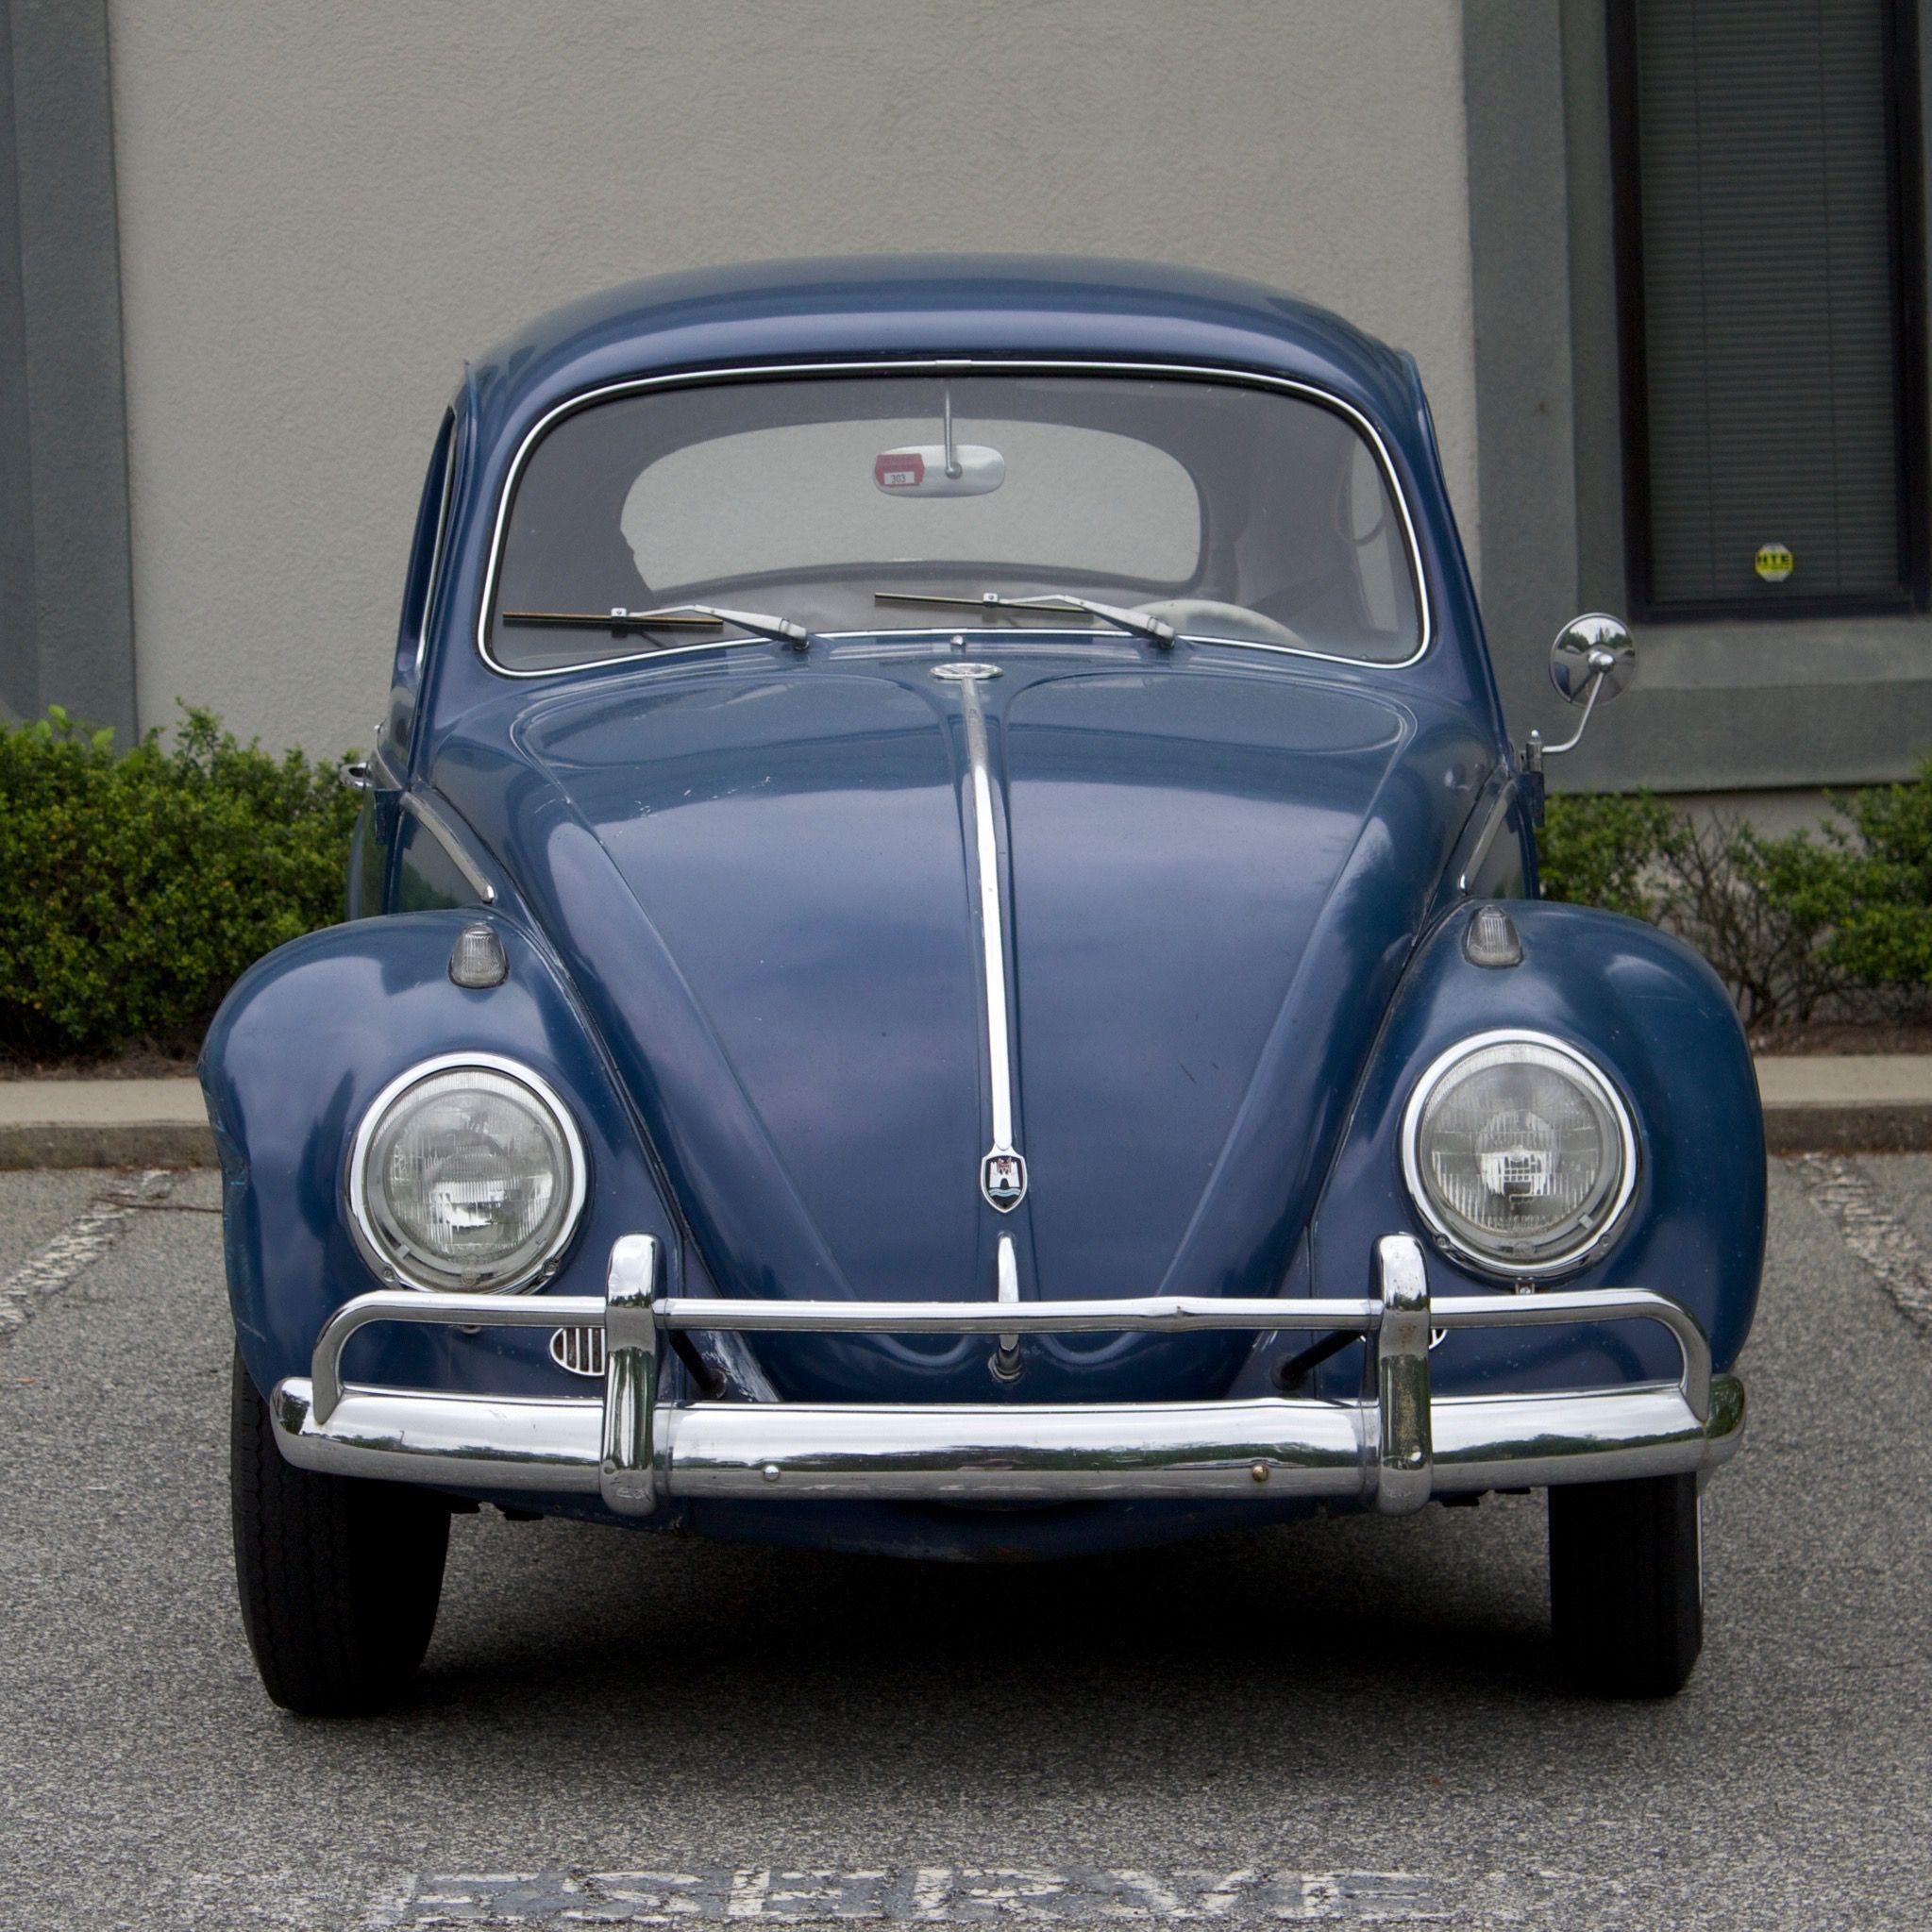 Vintage Cog Wheel VW Logo - 1959 VW Beetle Volkswagen Bug Maintenance/restoration of old/vintage ...